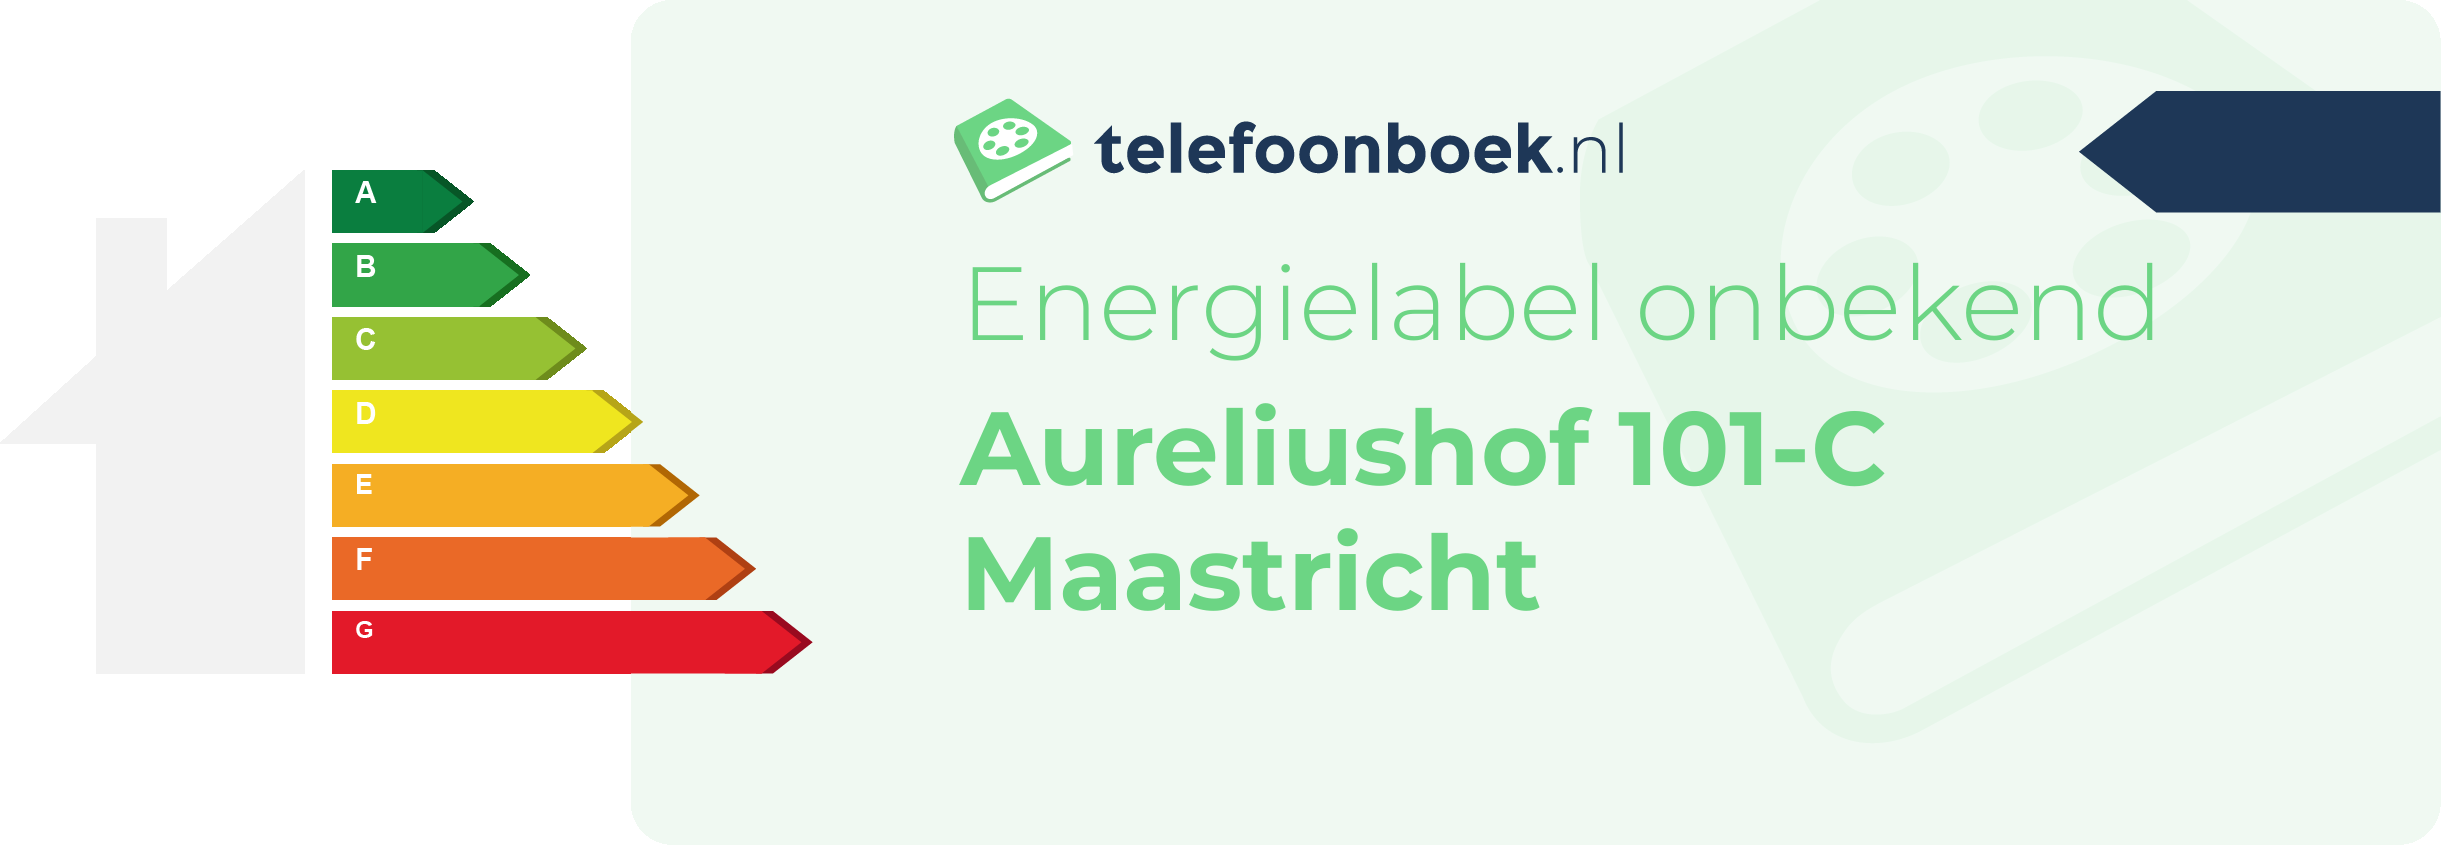 Energielabel Aureliushof 101-C Maastricht